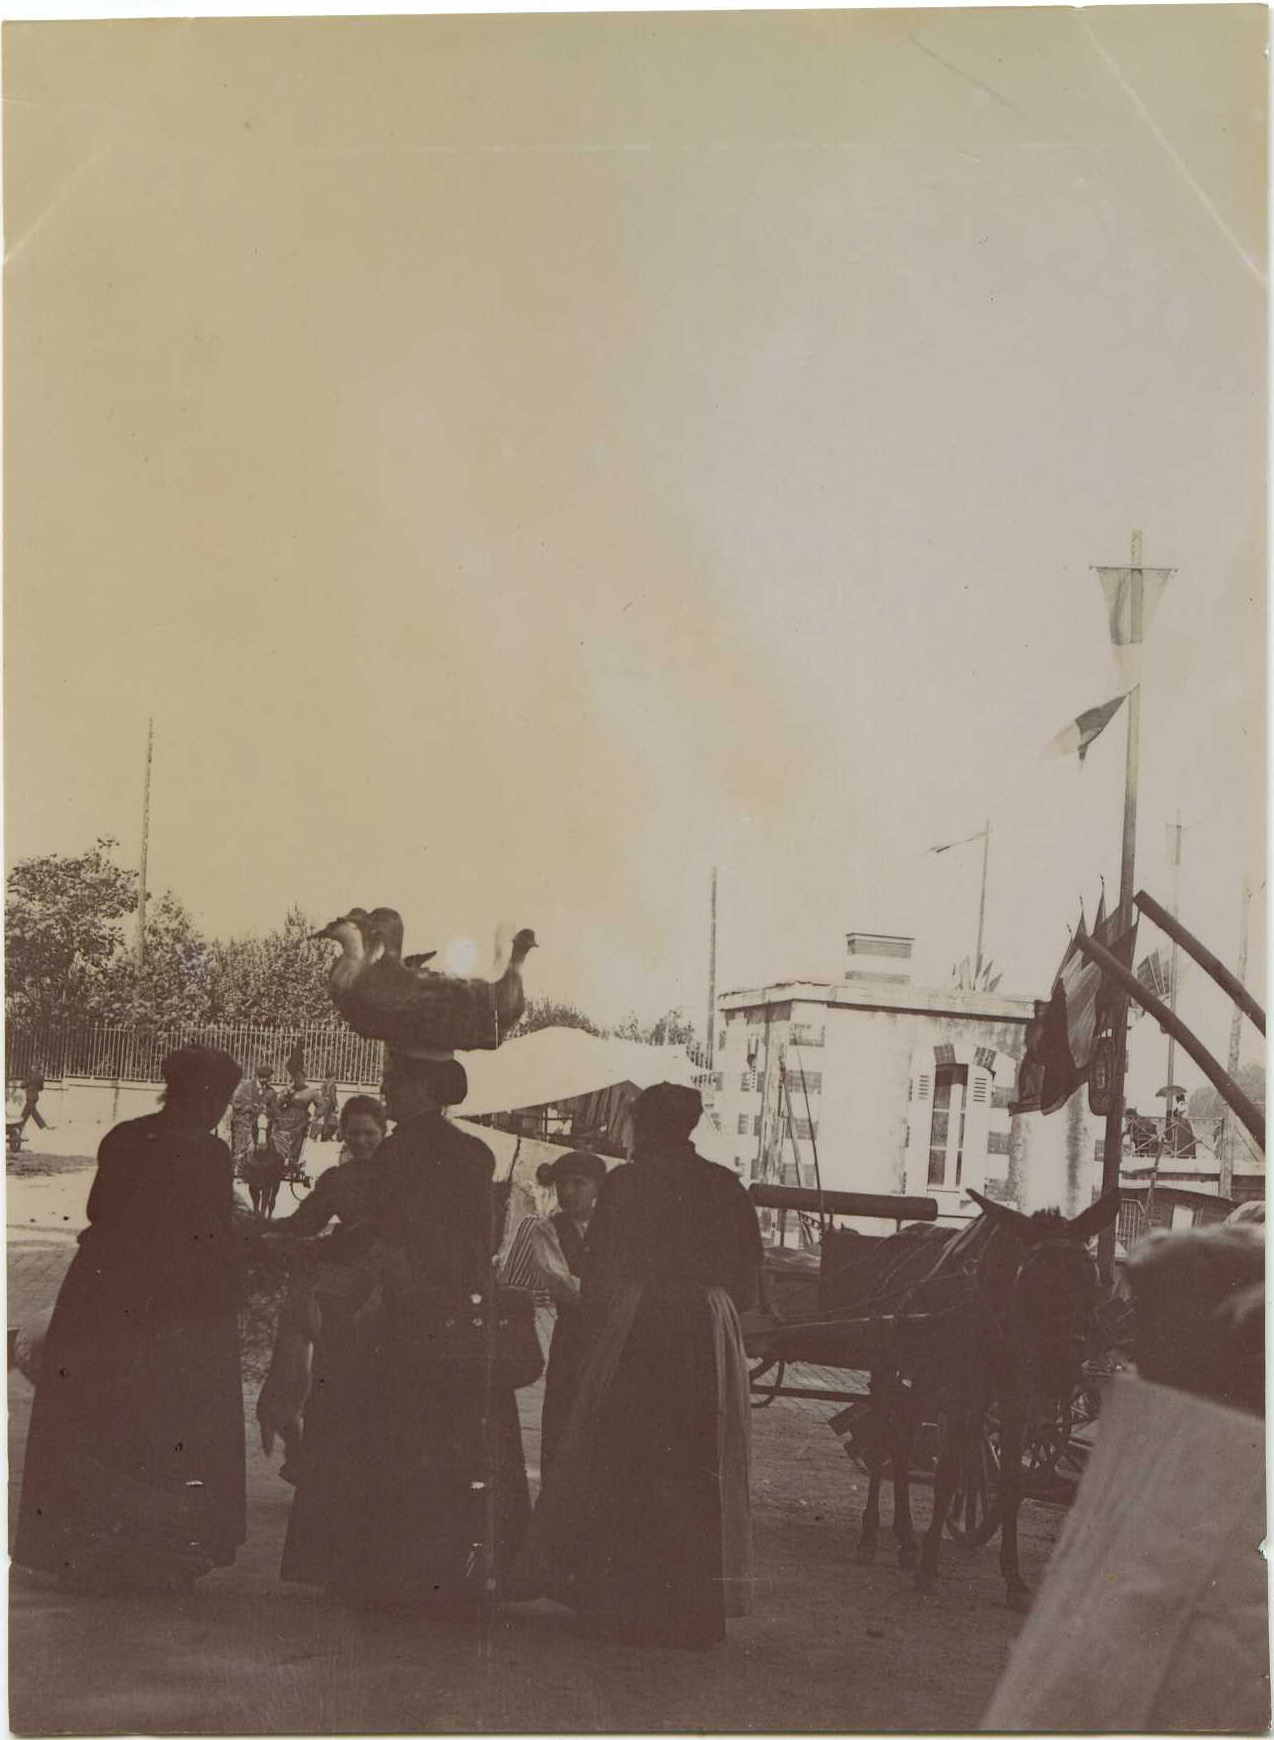 Dax - Photo - Le marché de la place Thiers (vers 1910)